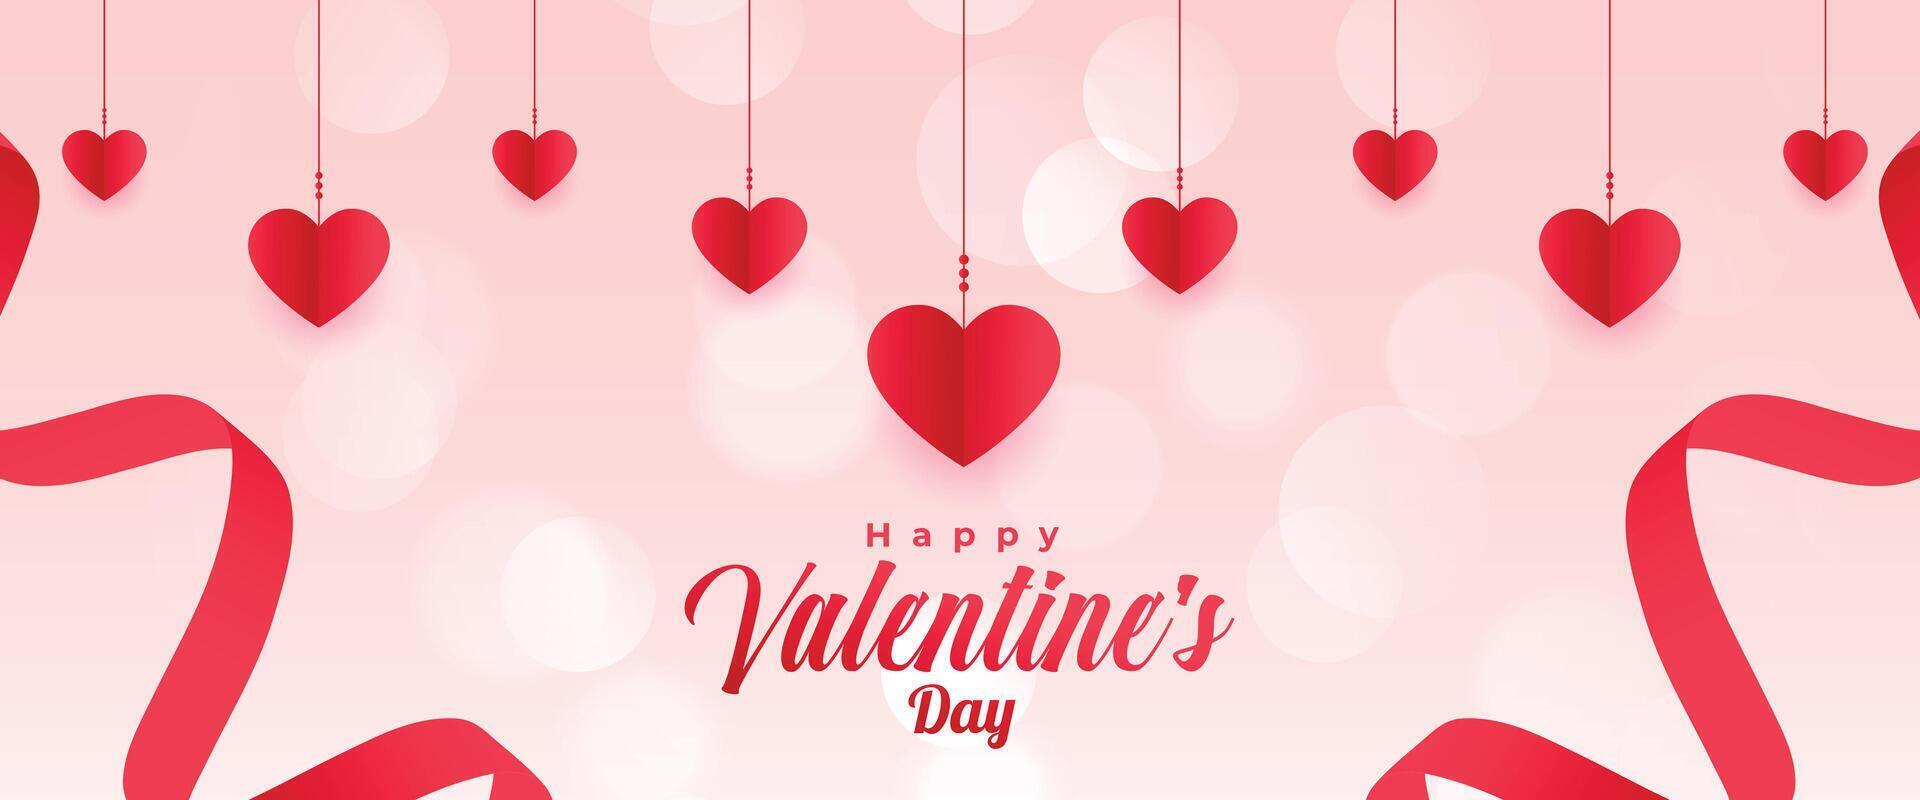 dekorativ Valentinsgrüße Tag Banner zum romantisch Sozial Medien Beiträge vektor